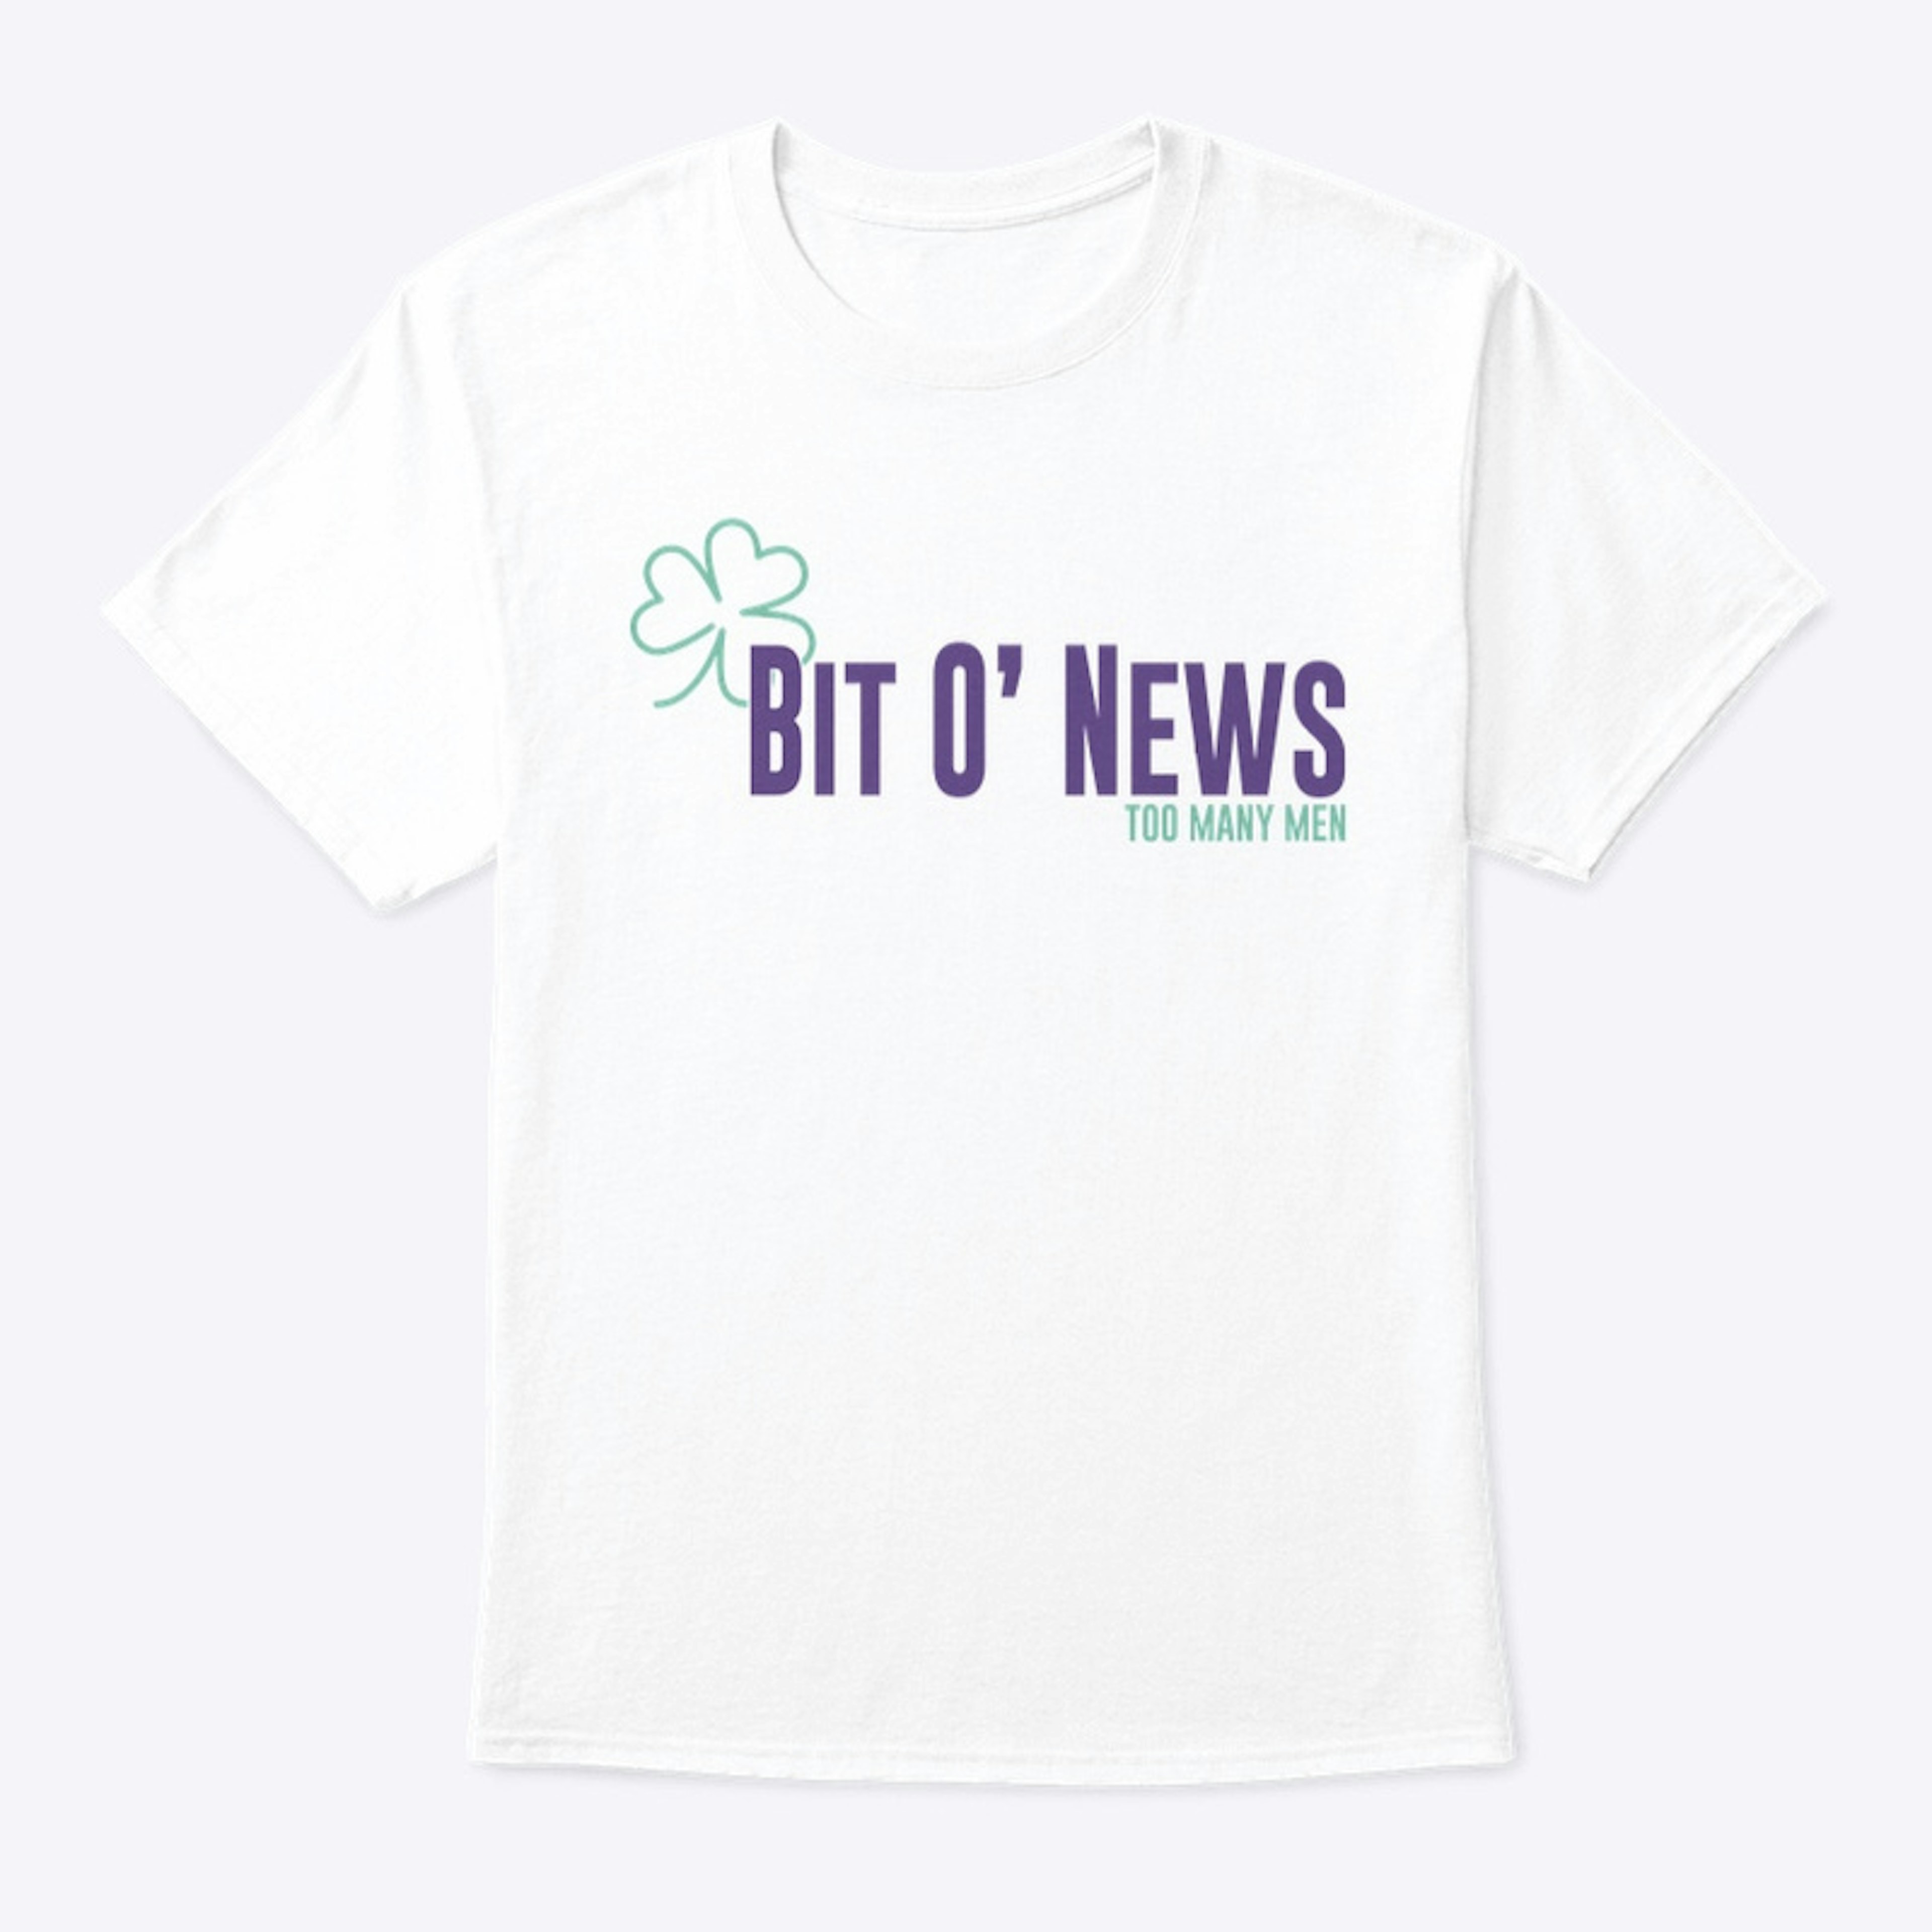 Bit O' News merch